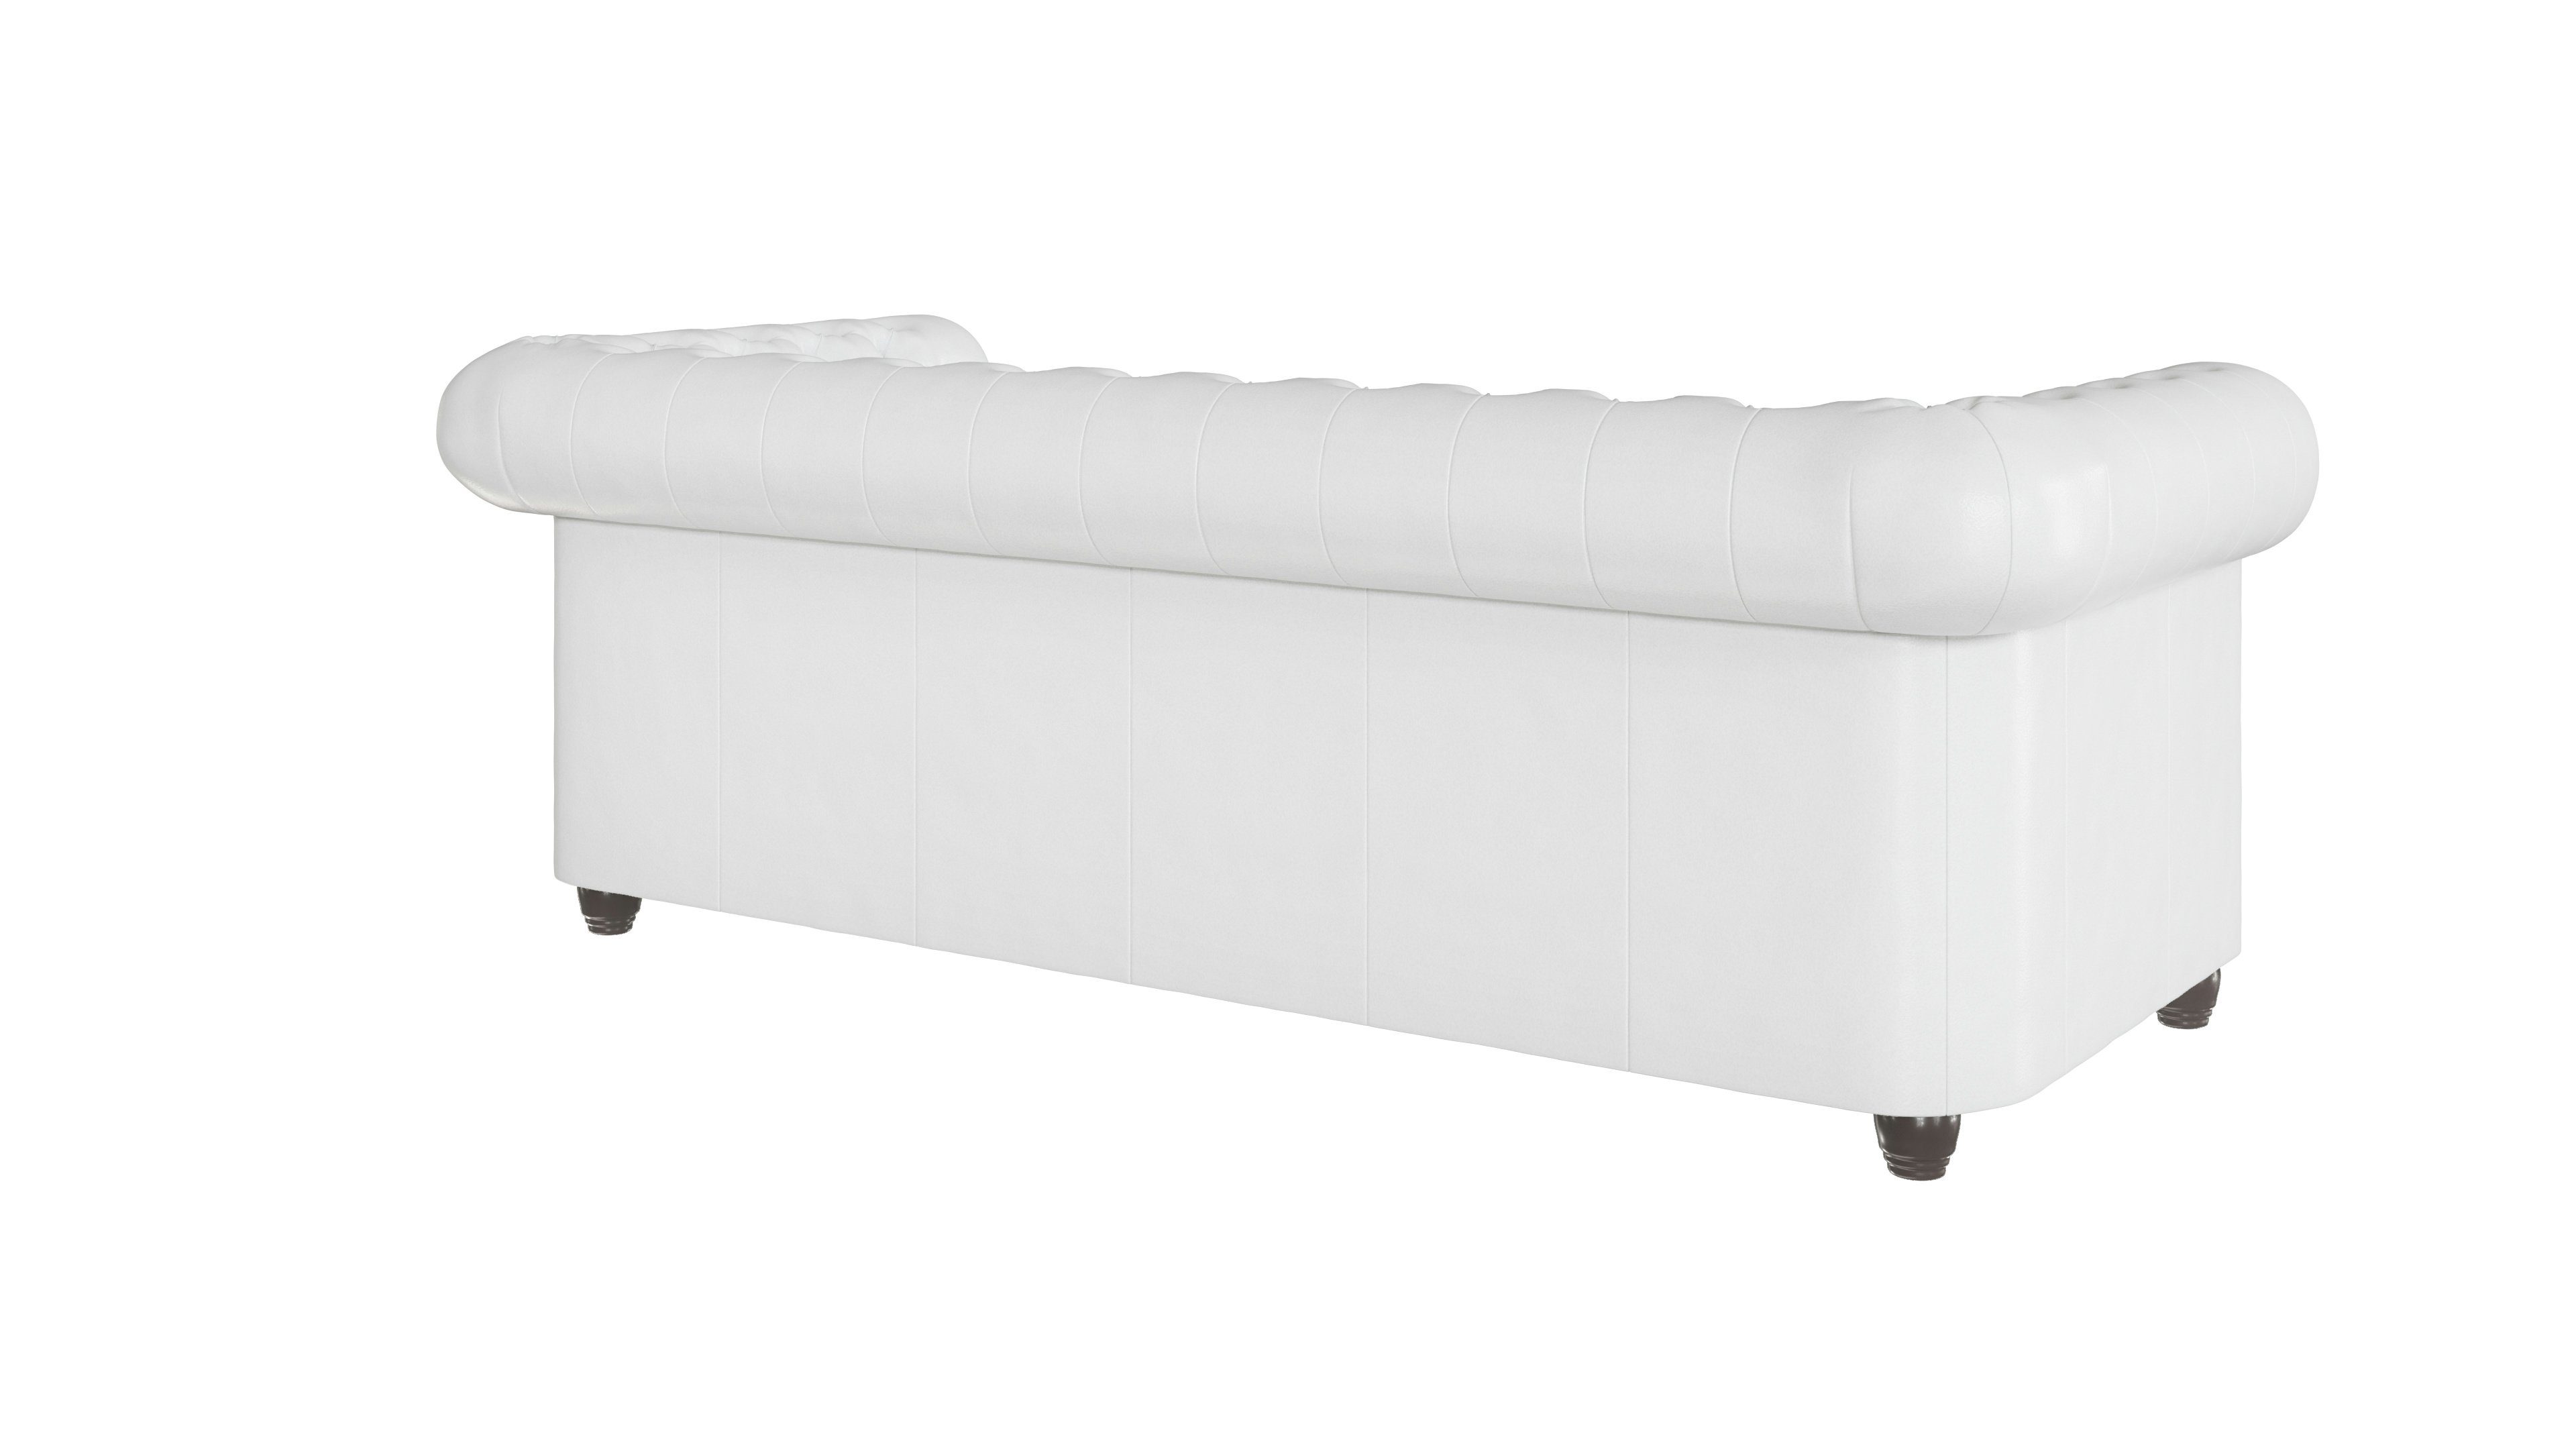 Wellenfederung Möbel S-Style Chesterfield mit 3-Sitzer Jeff Sofa, Weiß